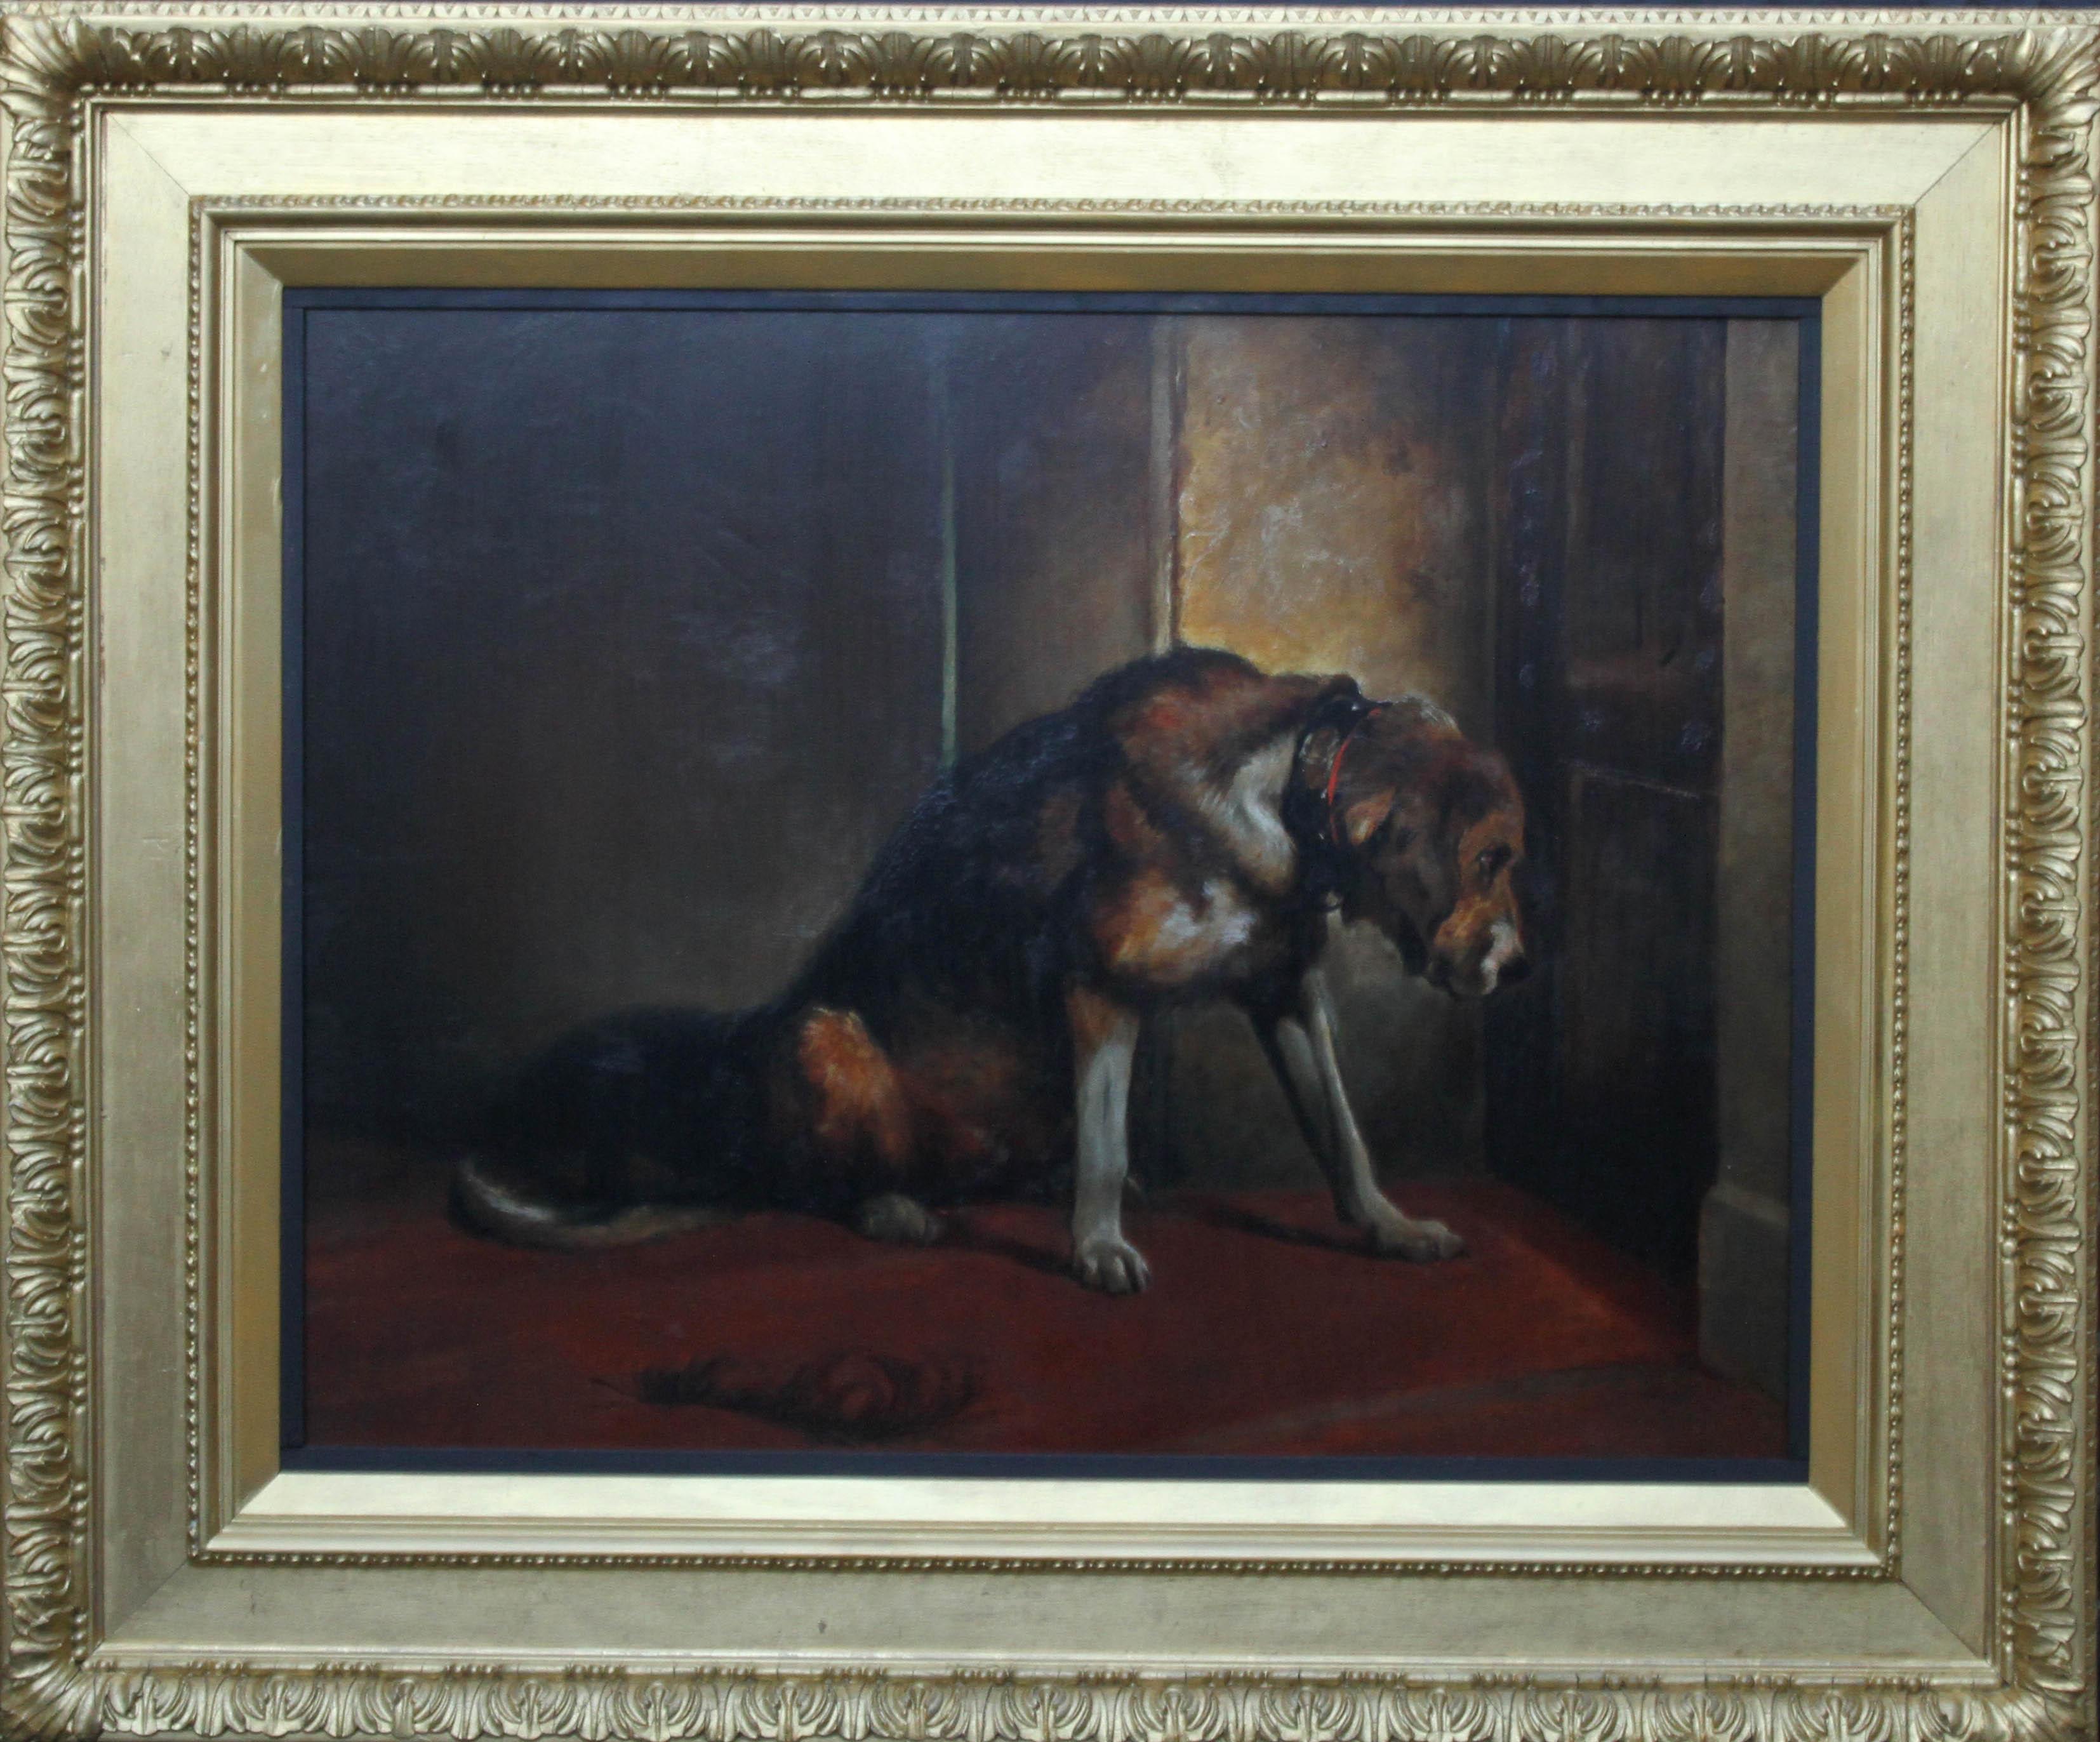 Le chien attend patiemment  - Peinture à l'huile d'un portrait de chien fidèle de l'art victorien britannique